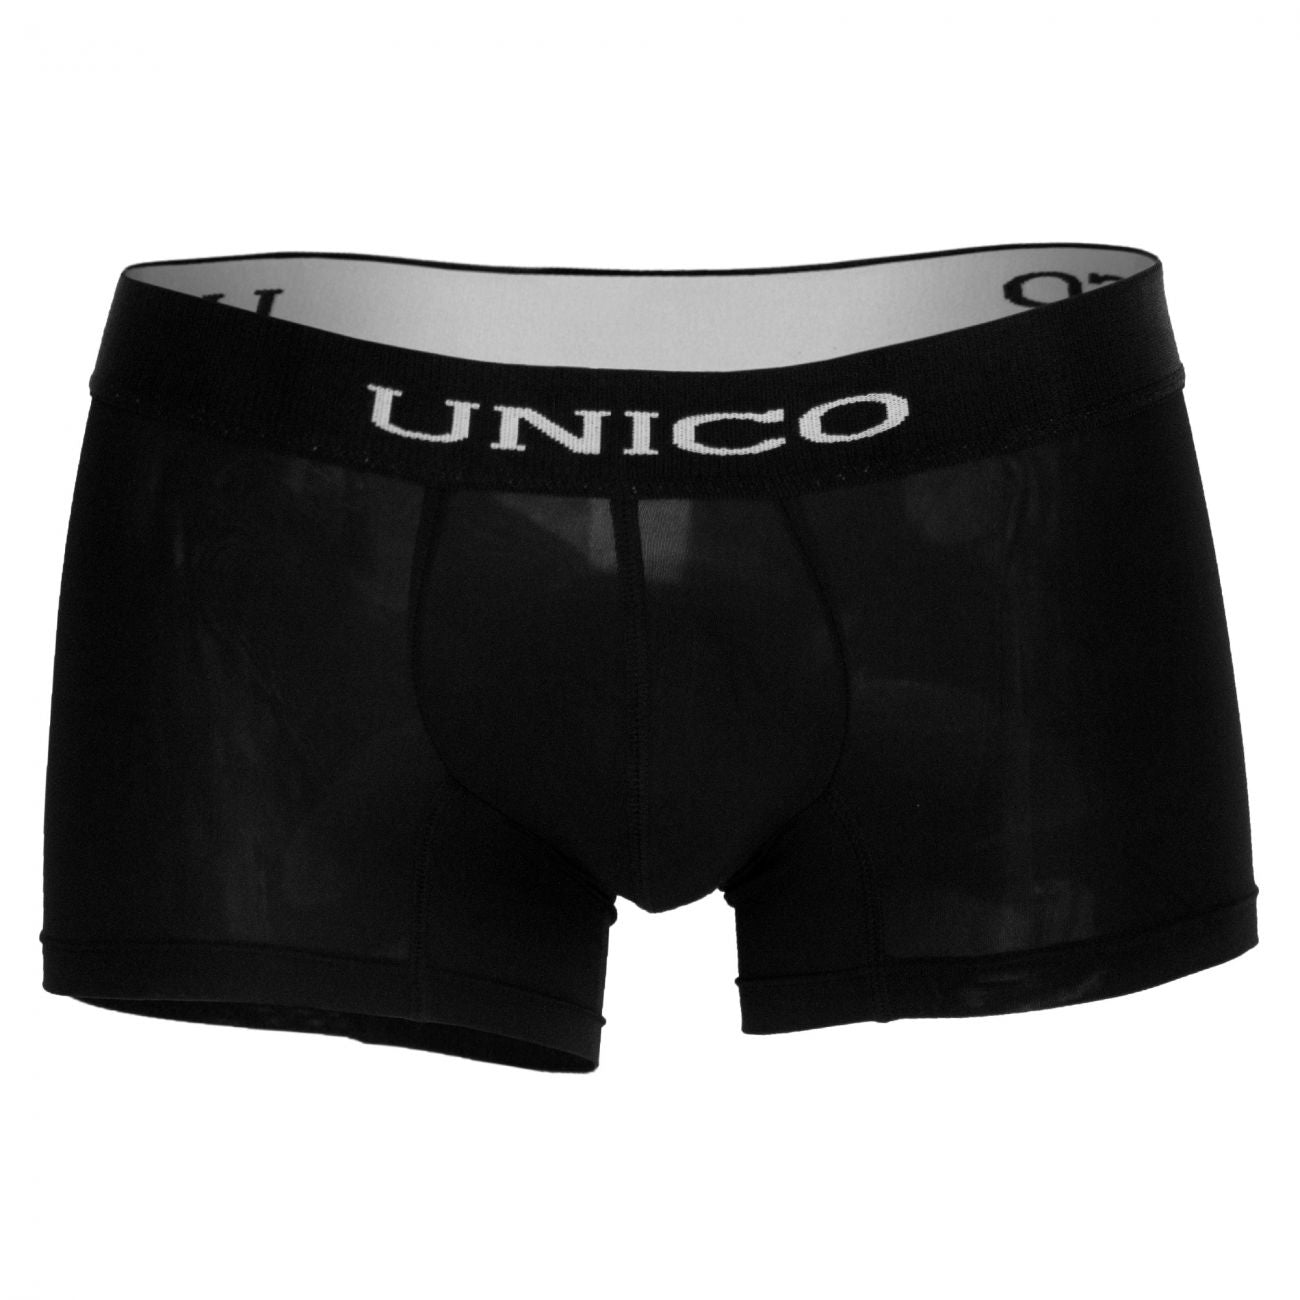 Unico 1200080399 Boxer Briefs Intenso Black